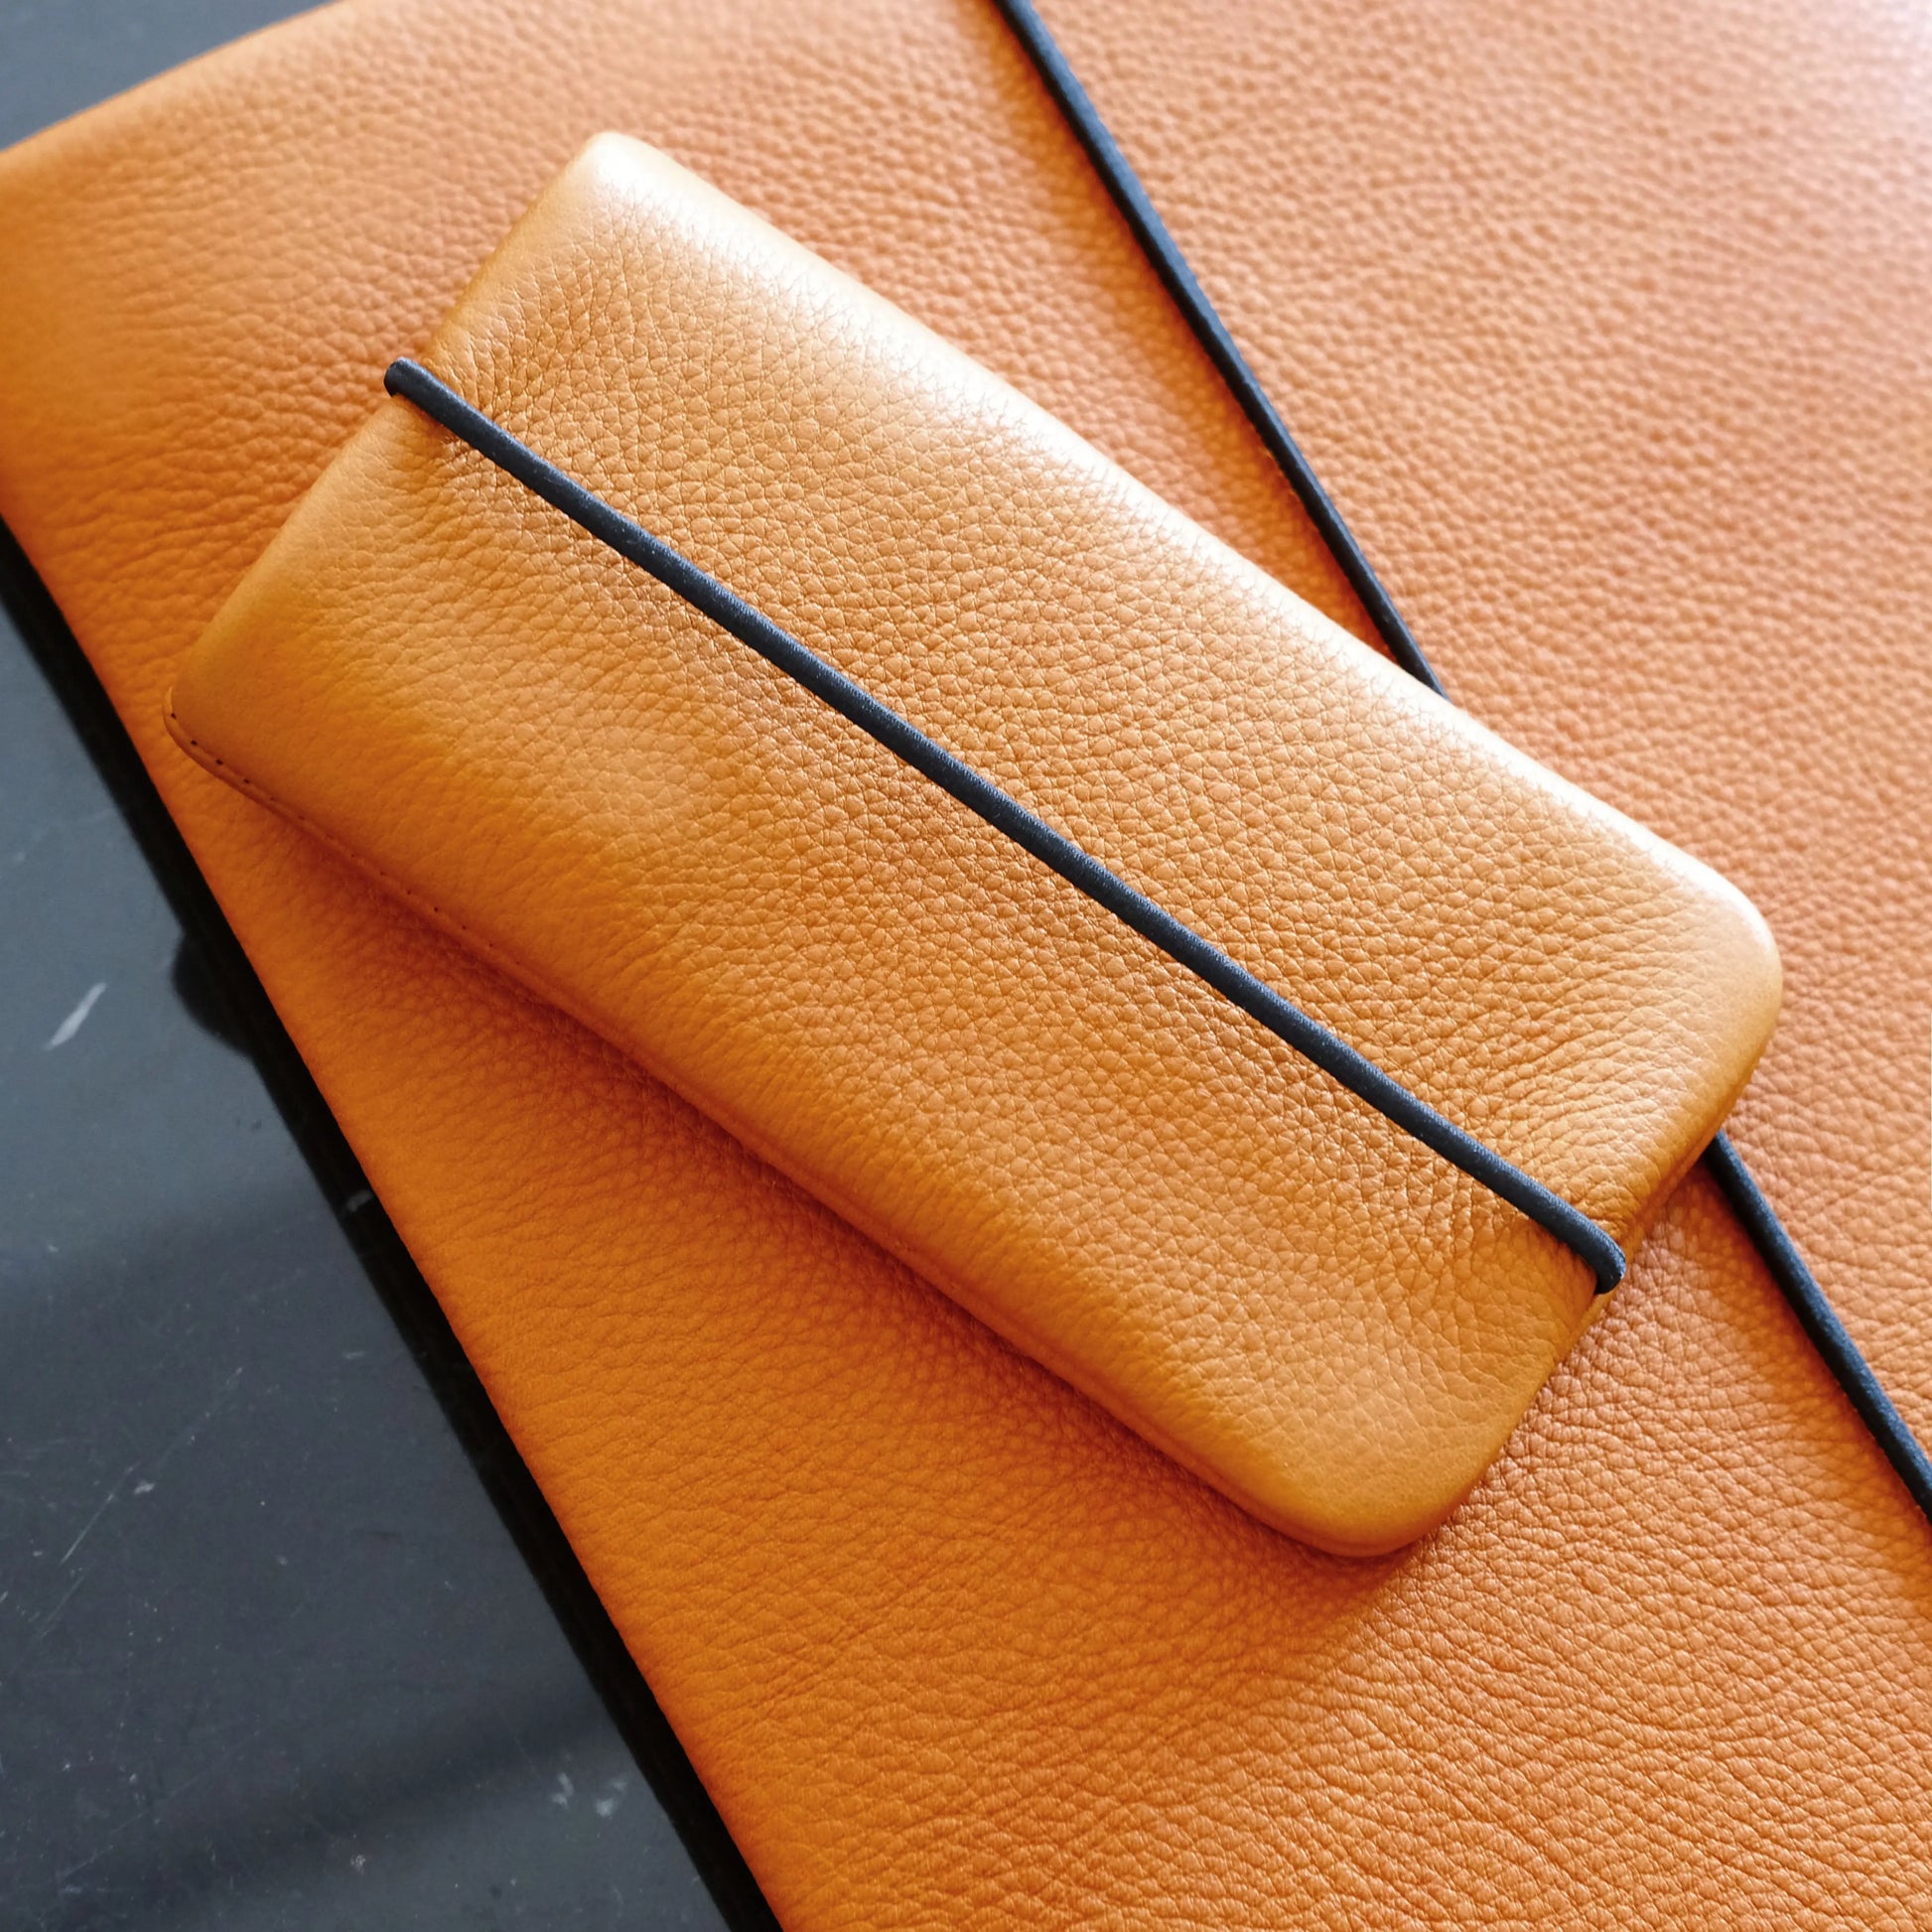 orangefarbene Lederhülle für iPhones liegt auf passender Leder-Macbookhülle